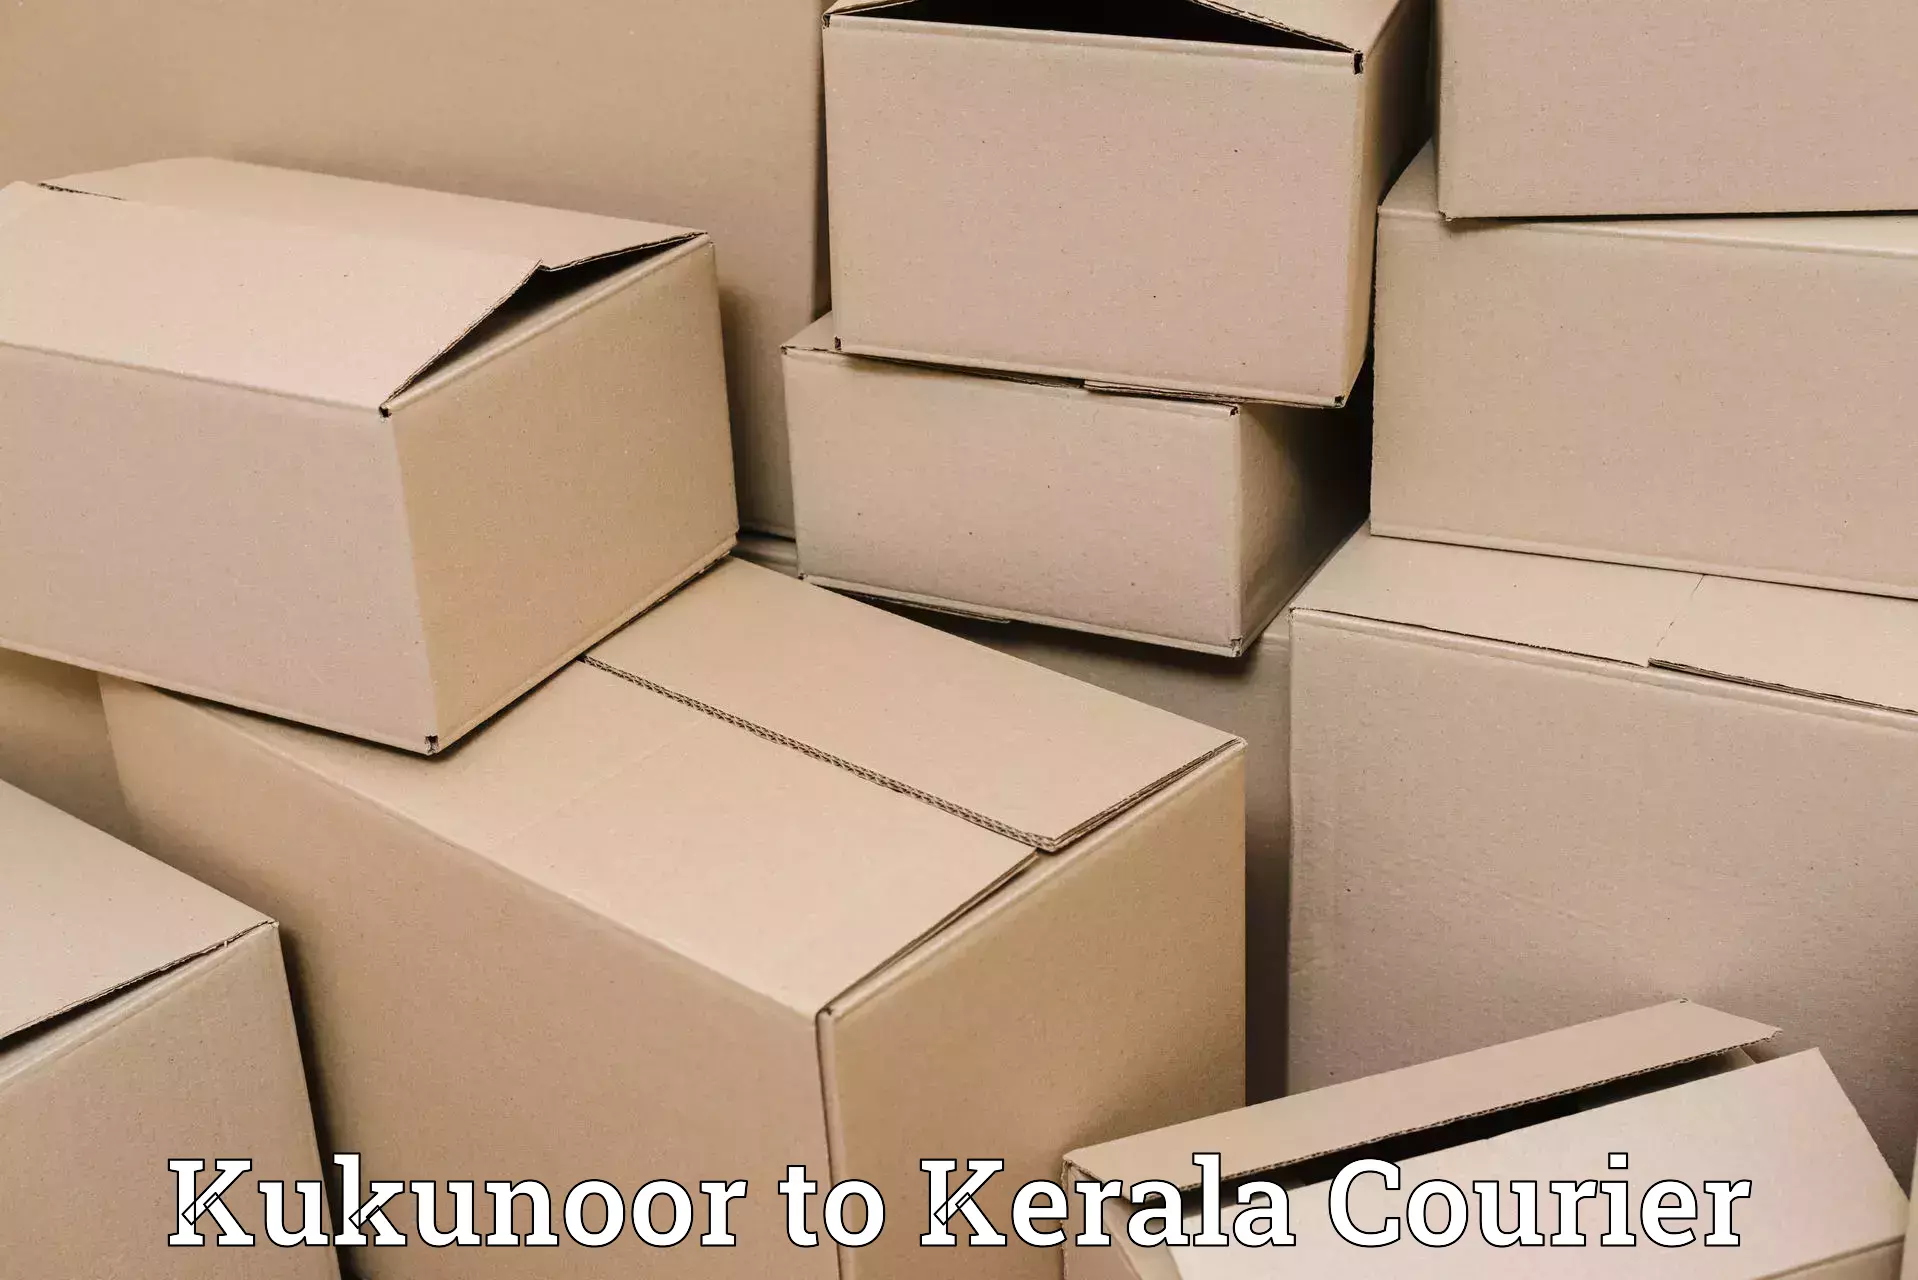 Efficient courier operations Kukunoor to Thodupuzha